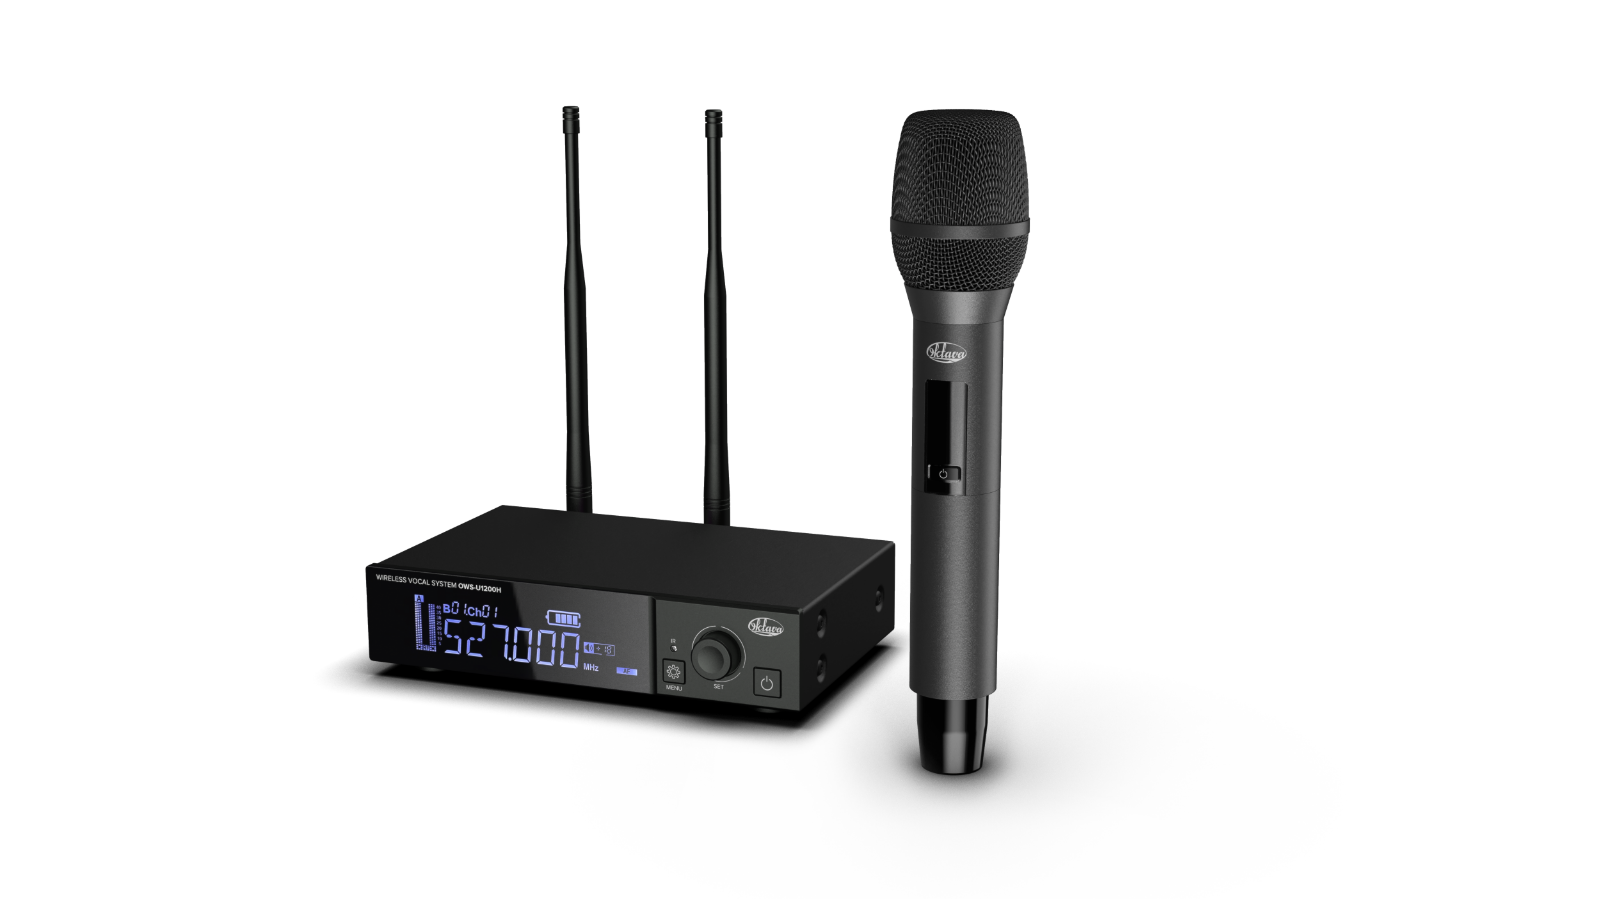 «Октава ДМ» запускает в продажу новый динамический проводной микрофон МД-307